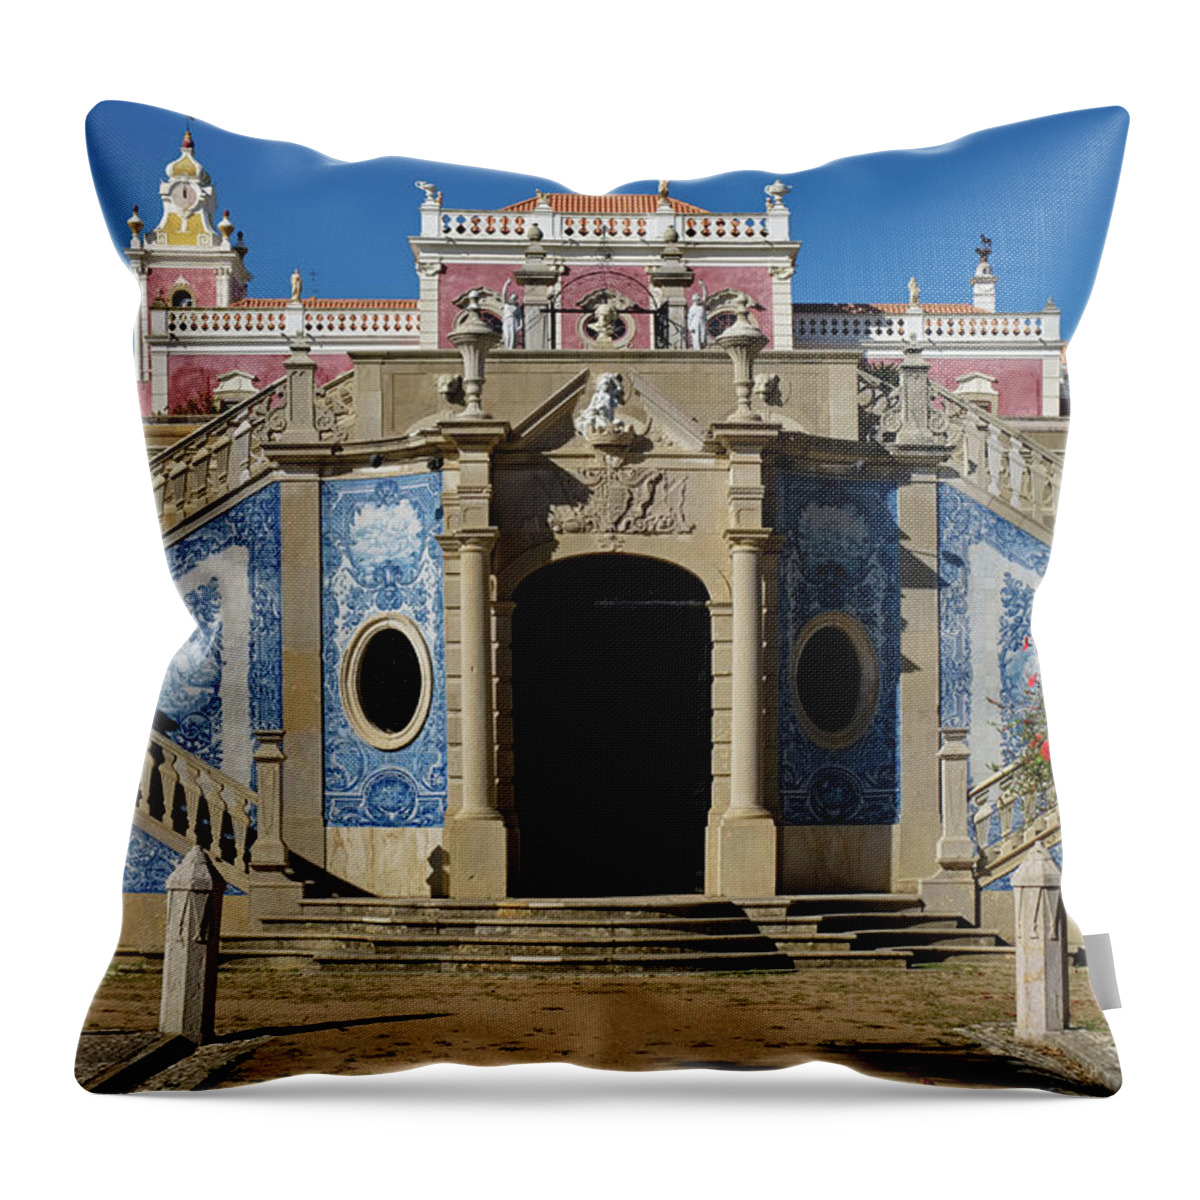 Estoi Palace Throw Pillow featuring the photograph Palacio de Estoi front view by Angelo DeVal